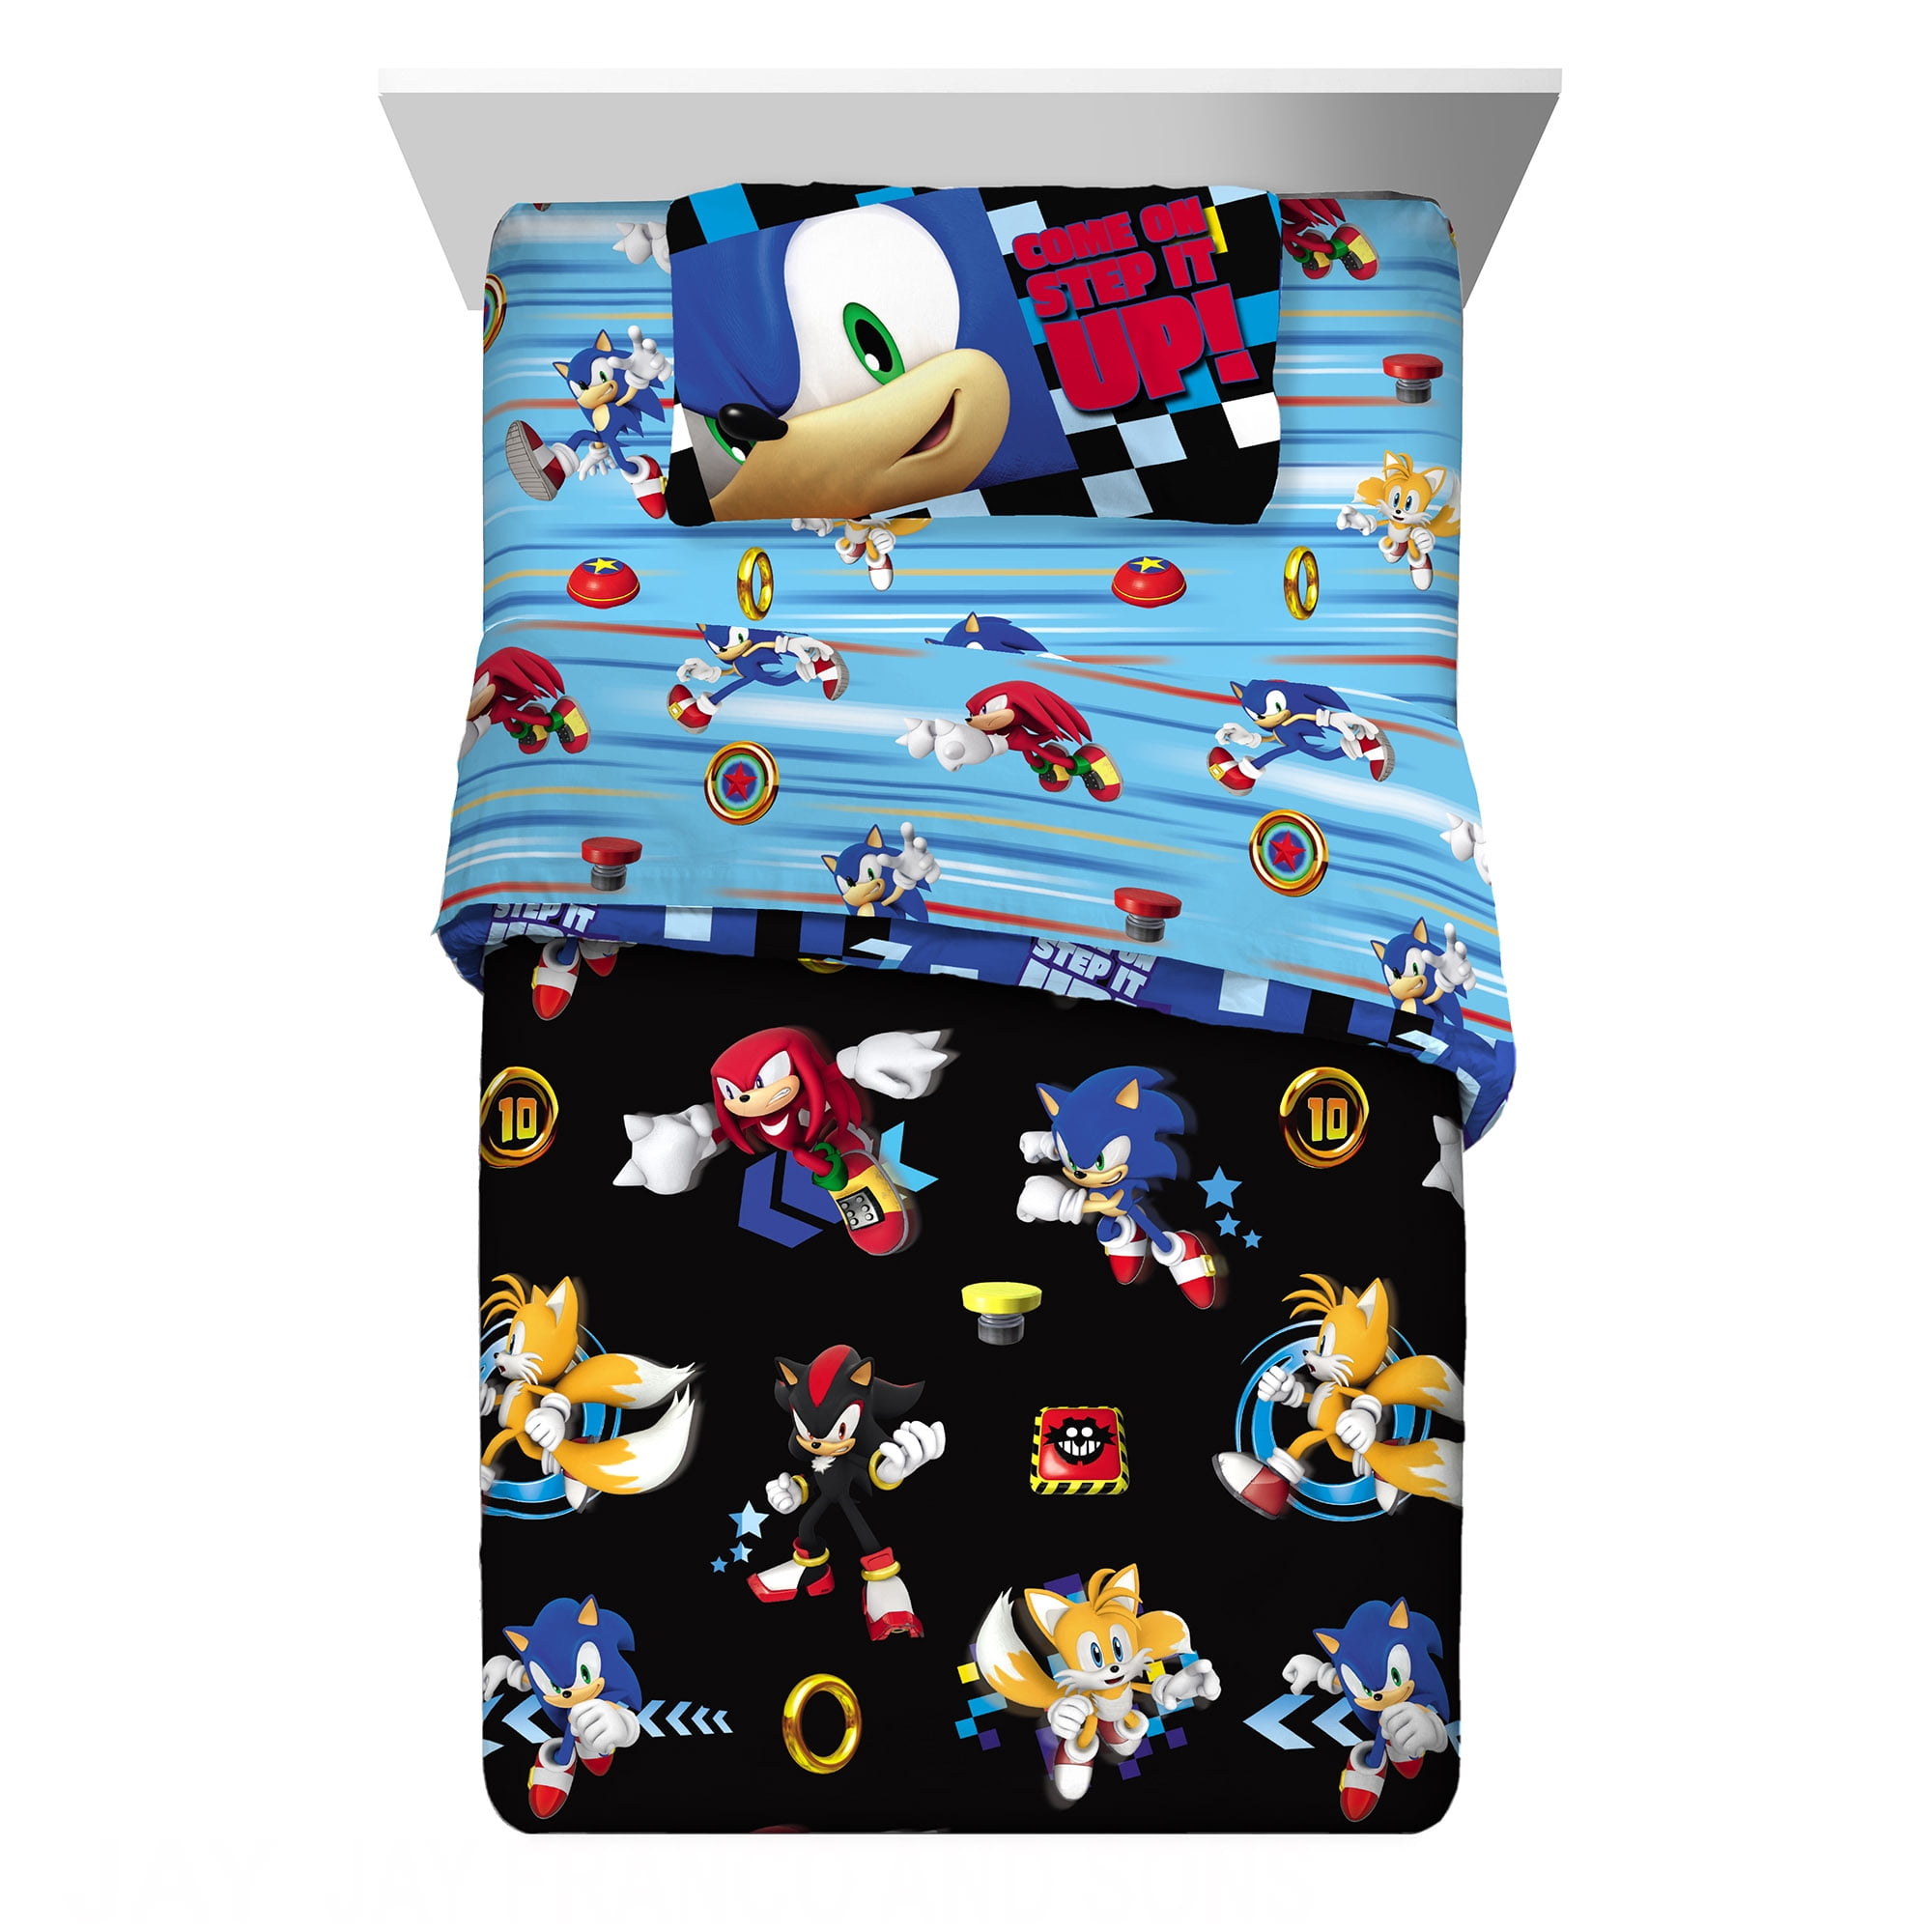 Sonic the Hedgehog Kids Twin Bed in a Bag Bedding Bundle Set, Comforter and Sheets, Black, Sega